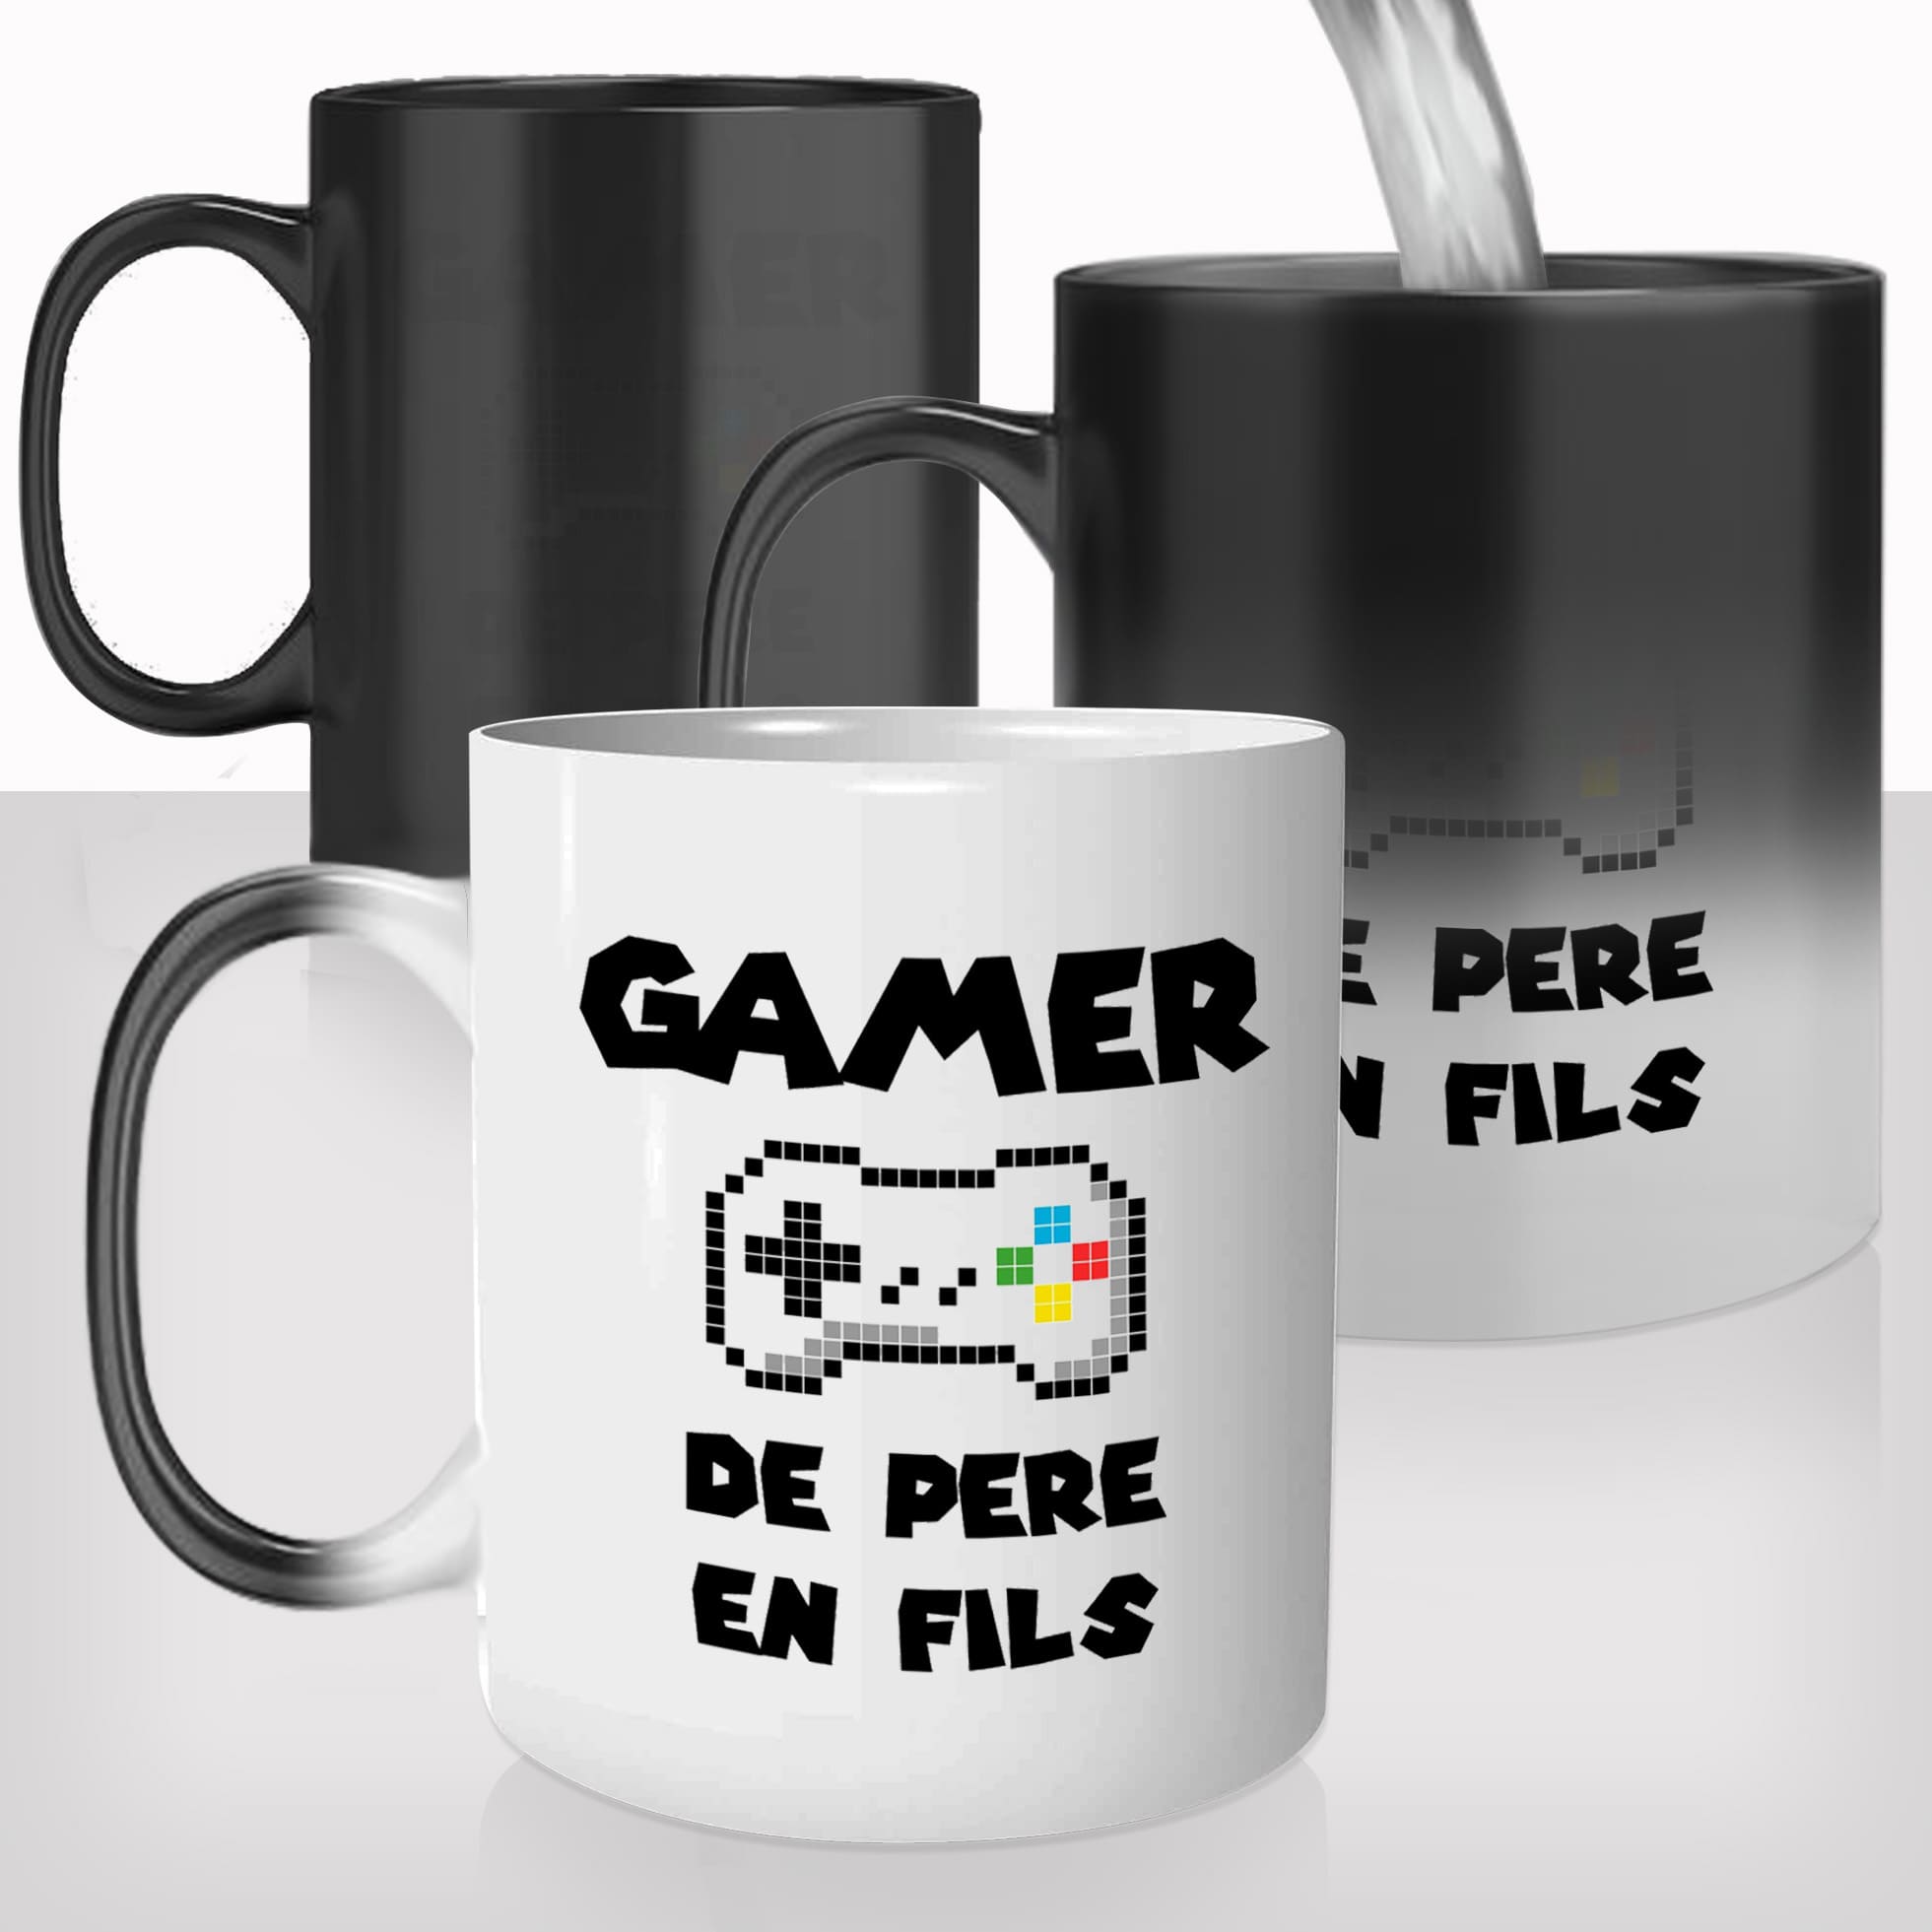 mug-magique-tasse-magic-thermo-reactif-gamer-jeux-vidéo-de-pere-en-fils-console-photo-personnalisable-papa-offrir-cadeau-original-fun